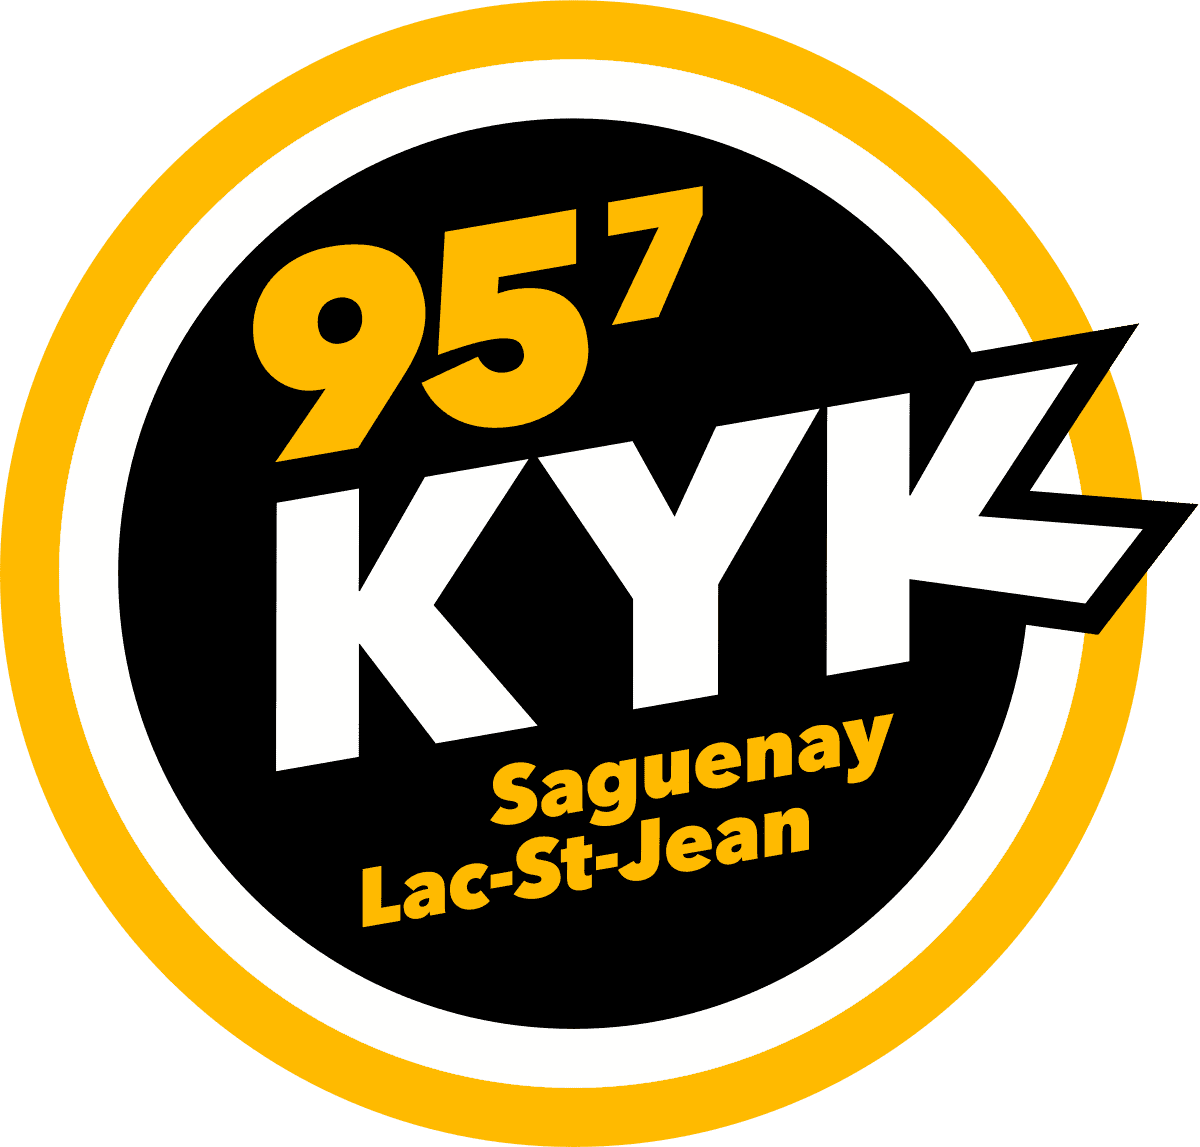 Logo 95 7 kyk